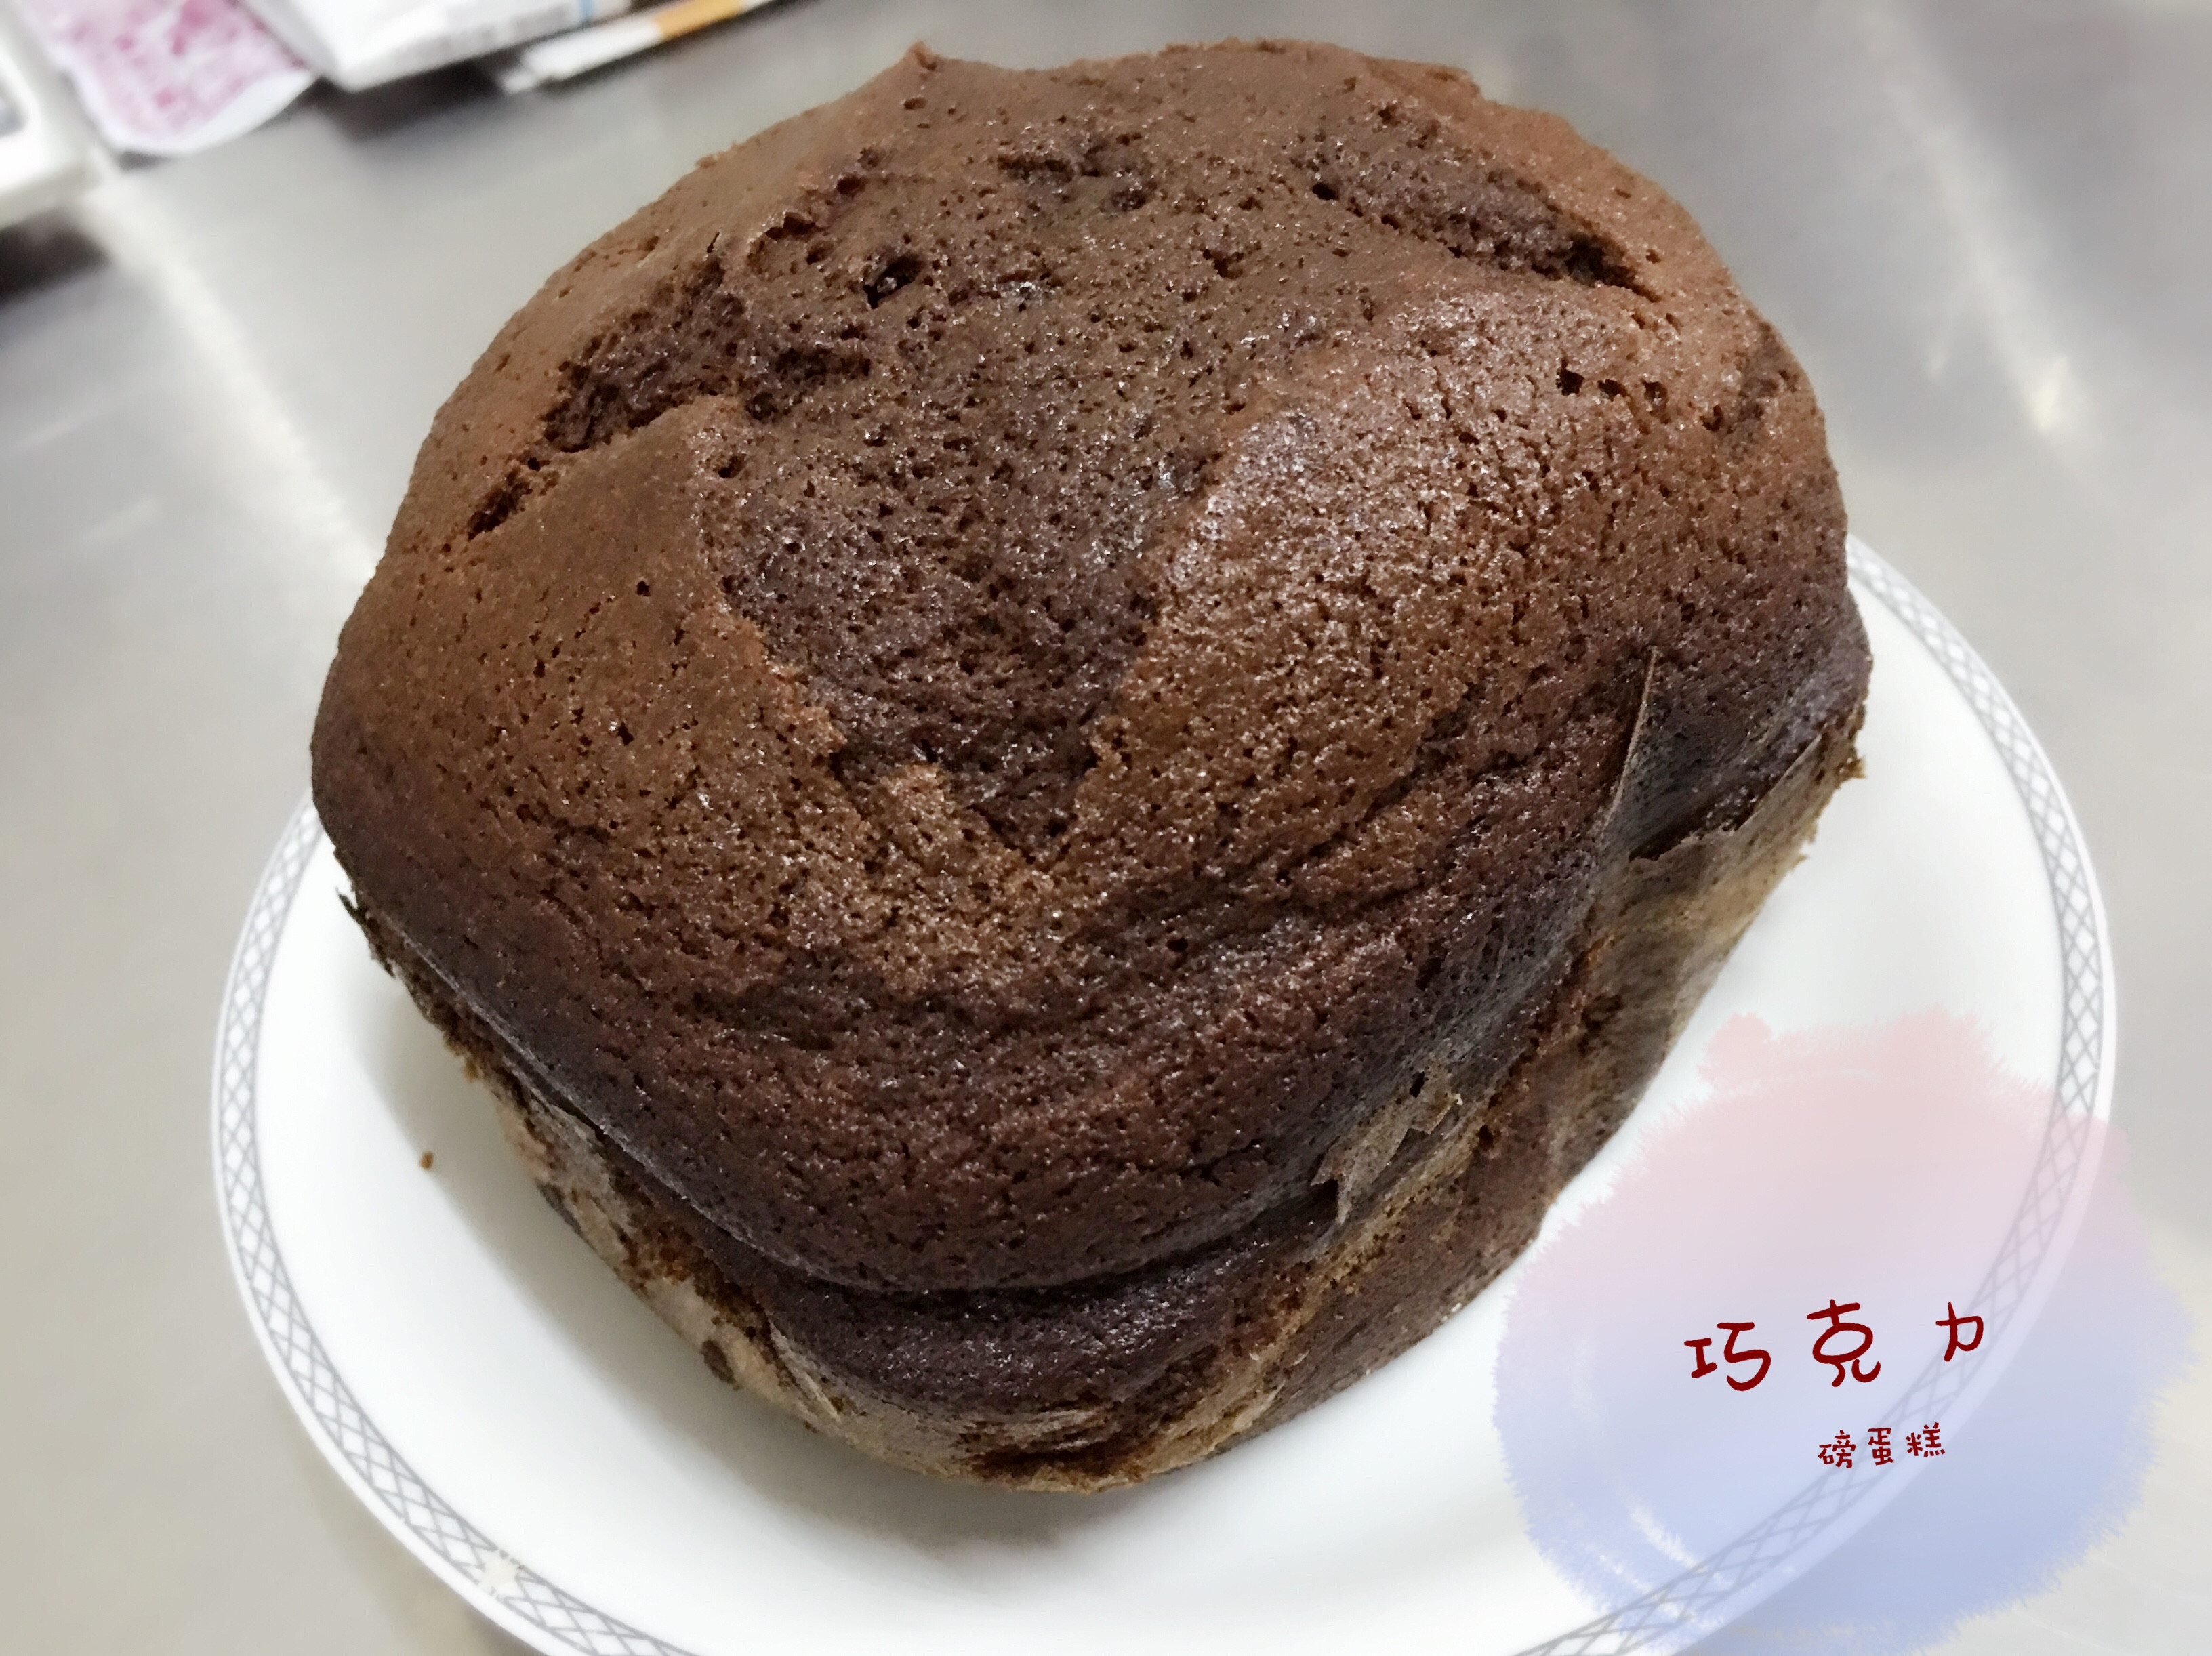 濃香巧克力磅蛋糕(全蛋打發法) by Sidney的廚房樂園 - 愛料理